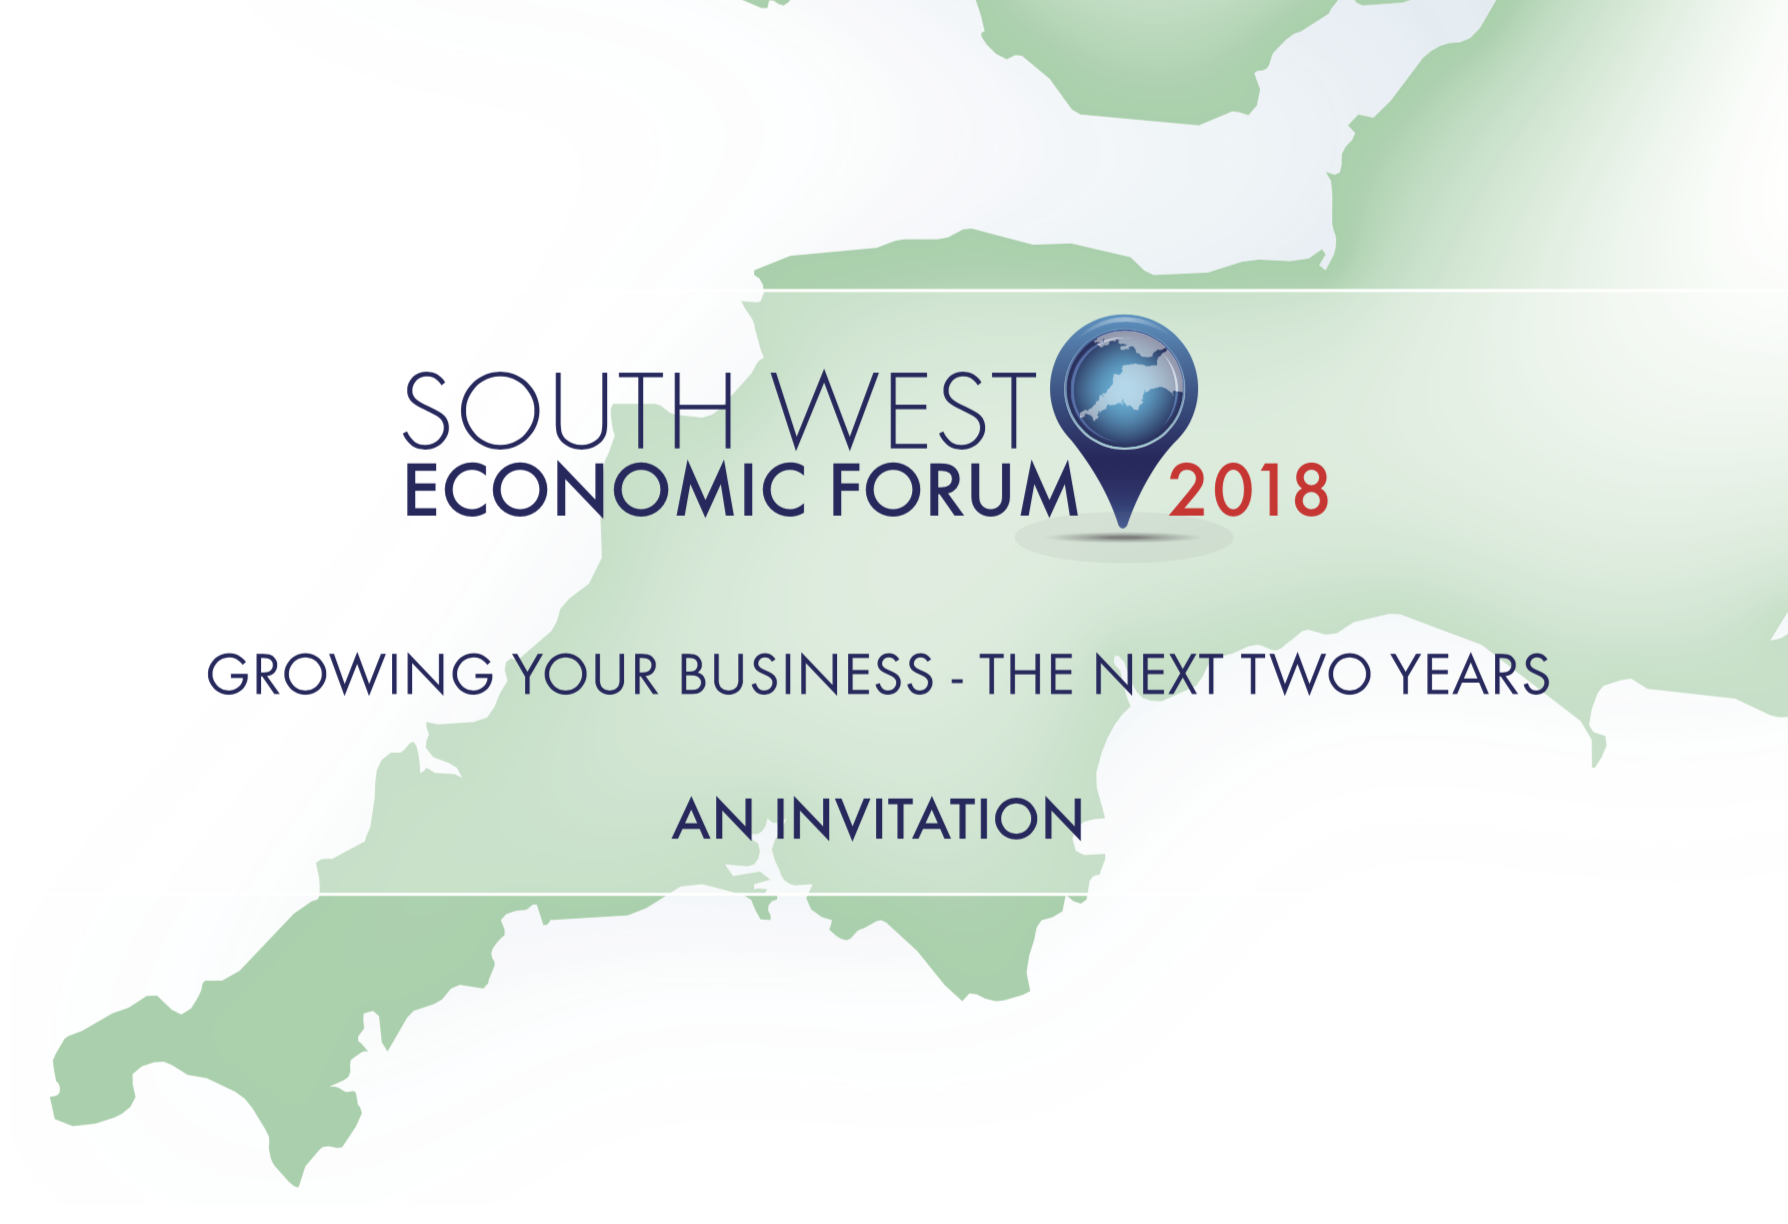 South West Economic Forum